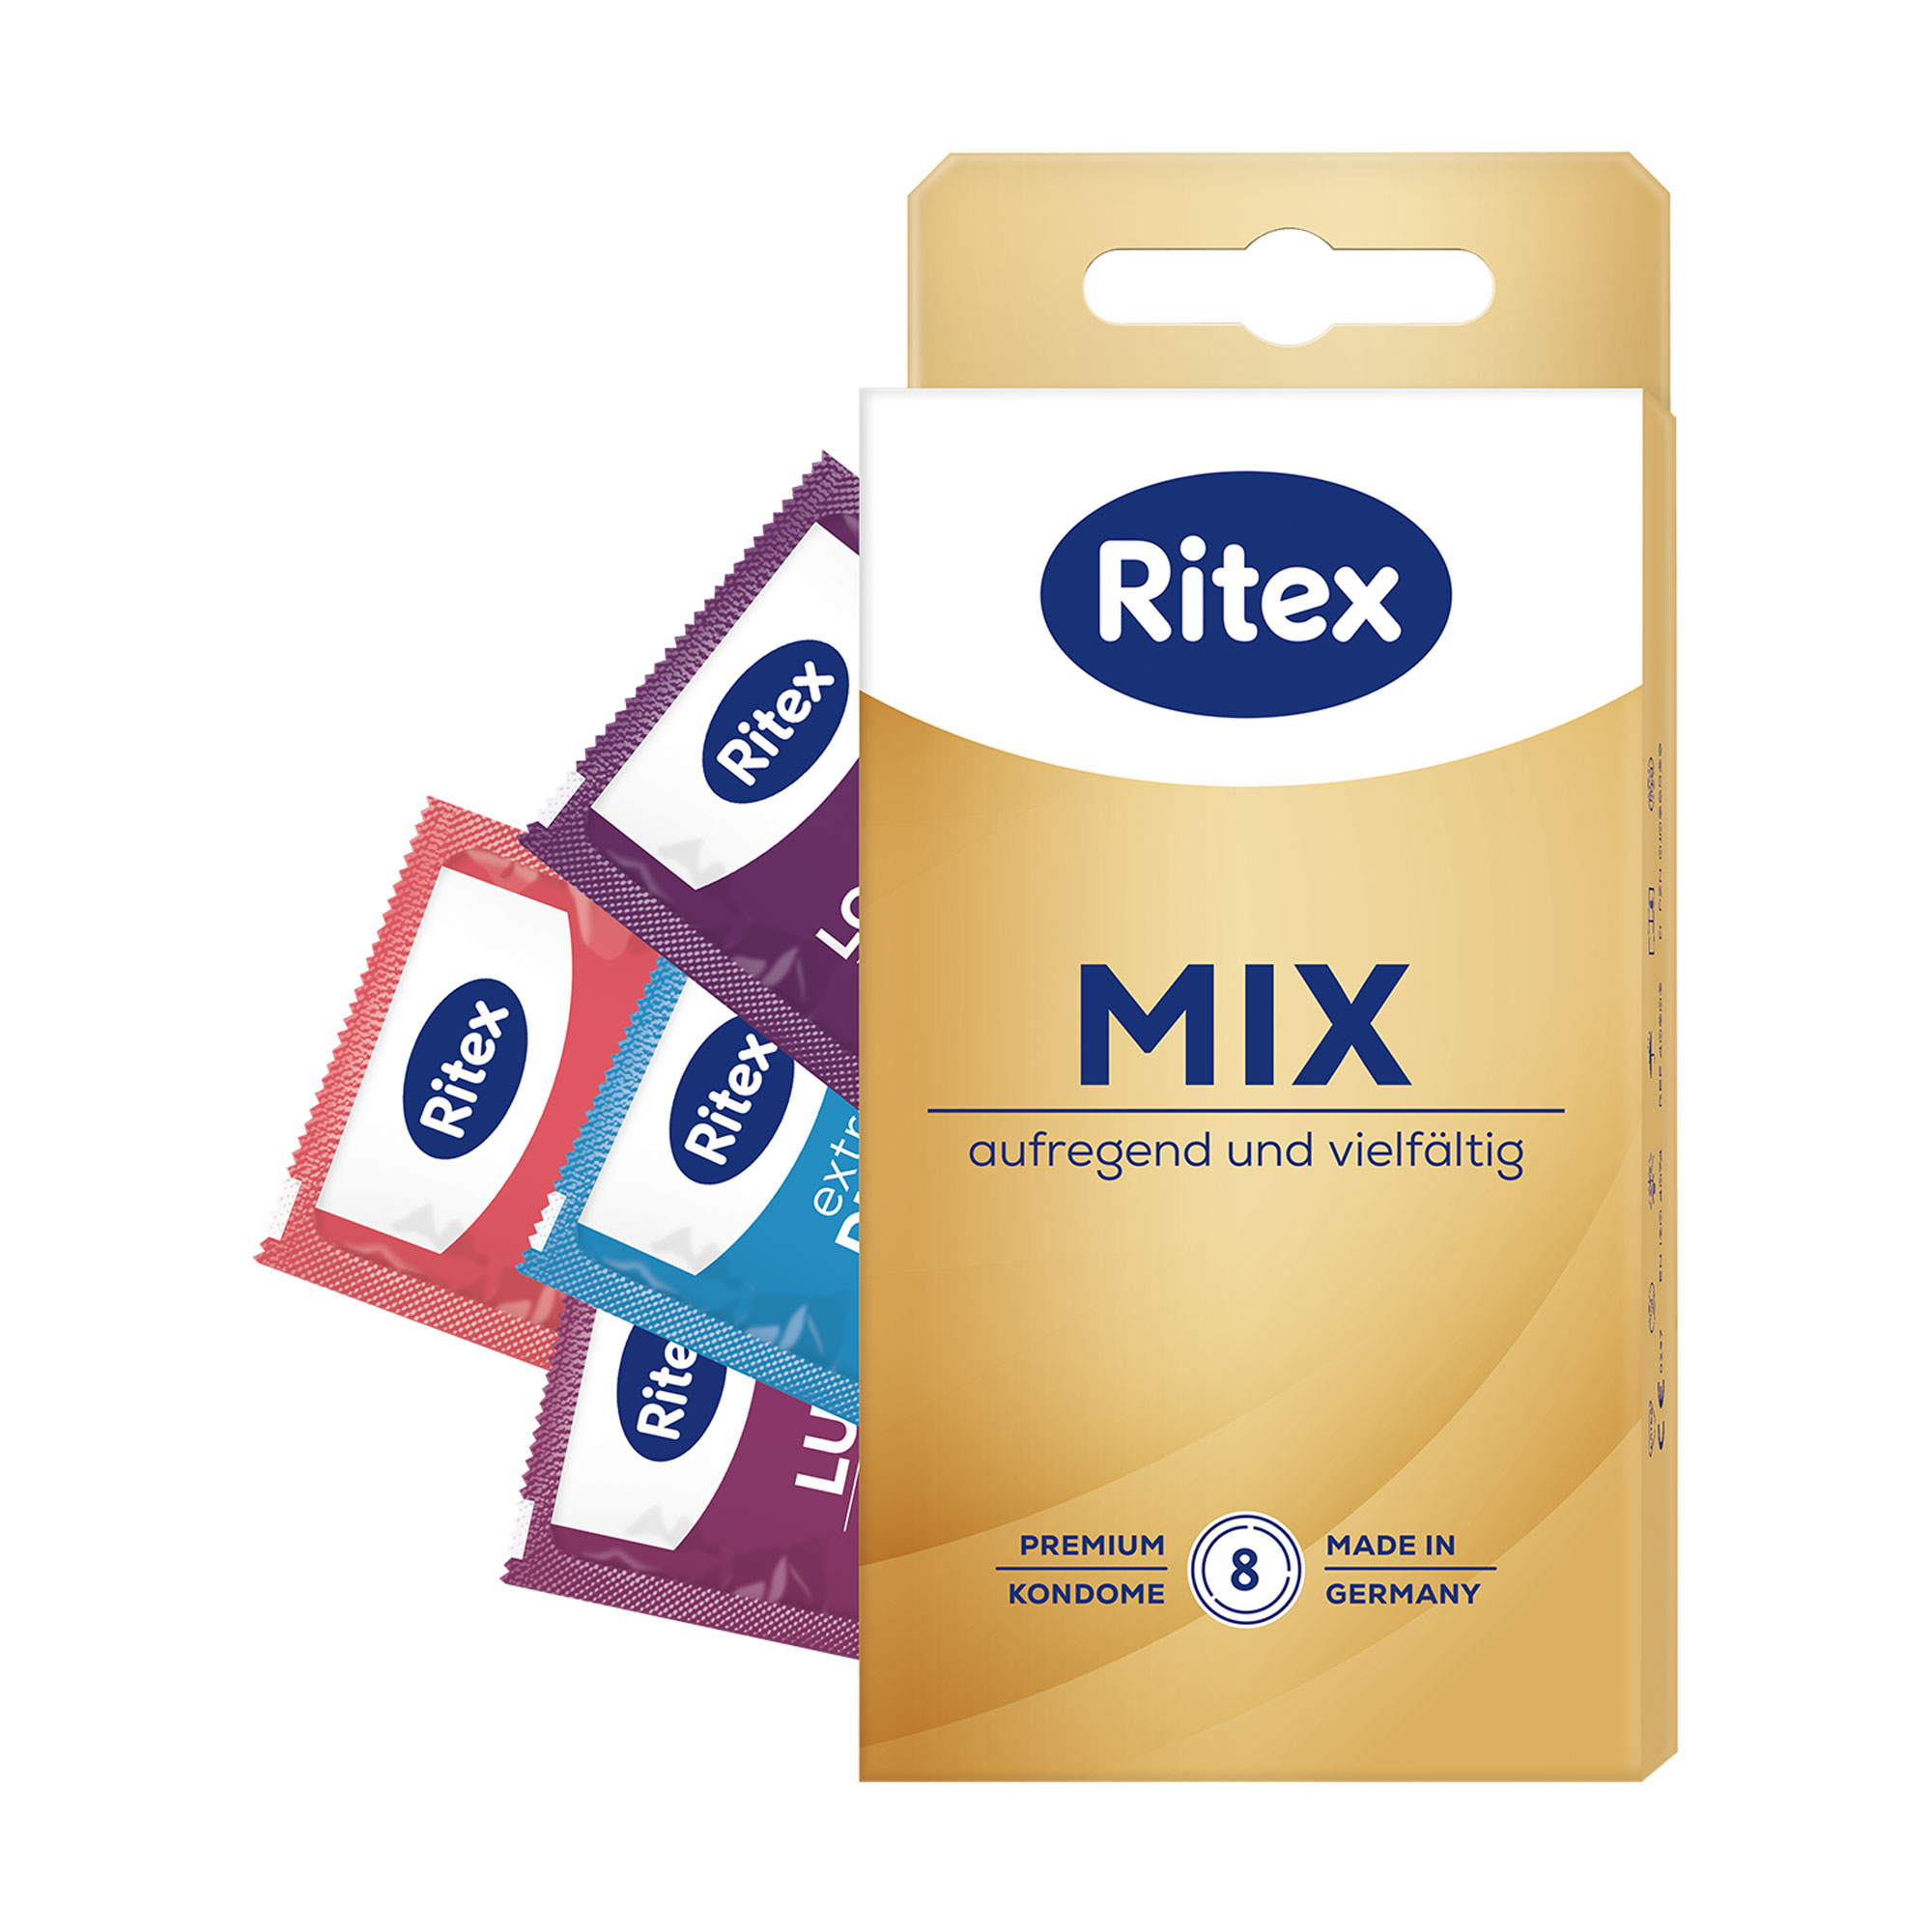 Ritex MIX steht für intensive Liebe und mehr Abwechslung. Mit 4 verschiedenen Sorten.